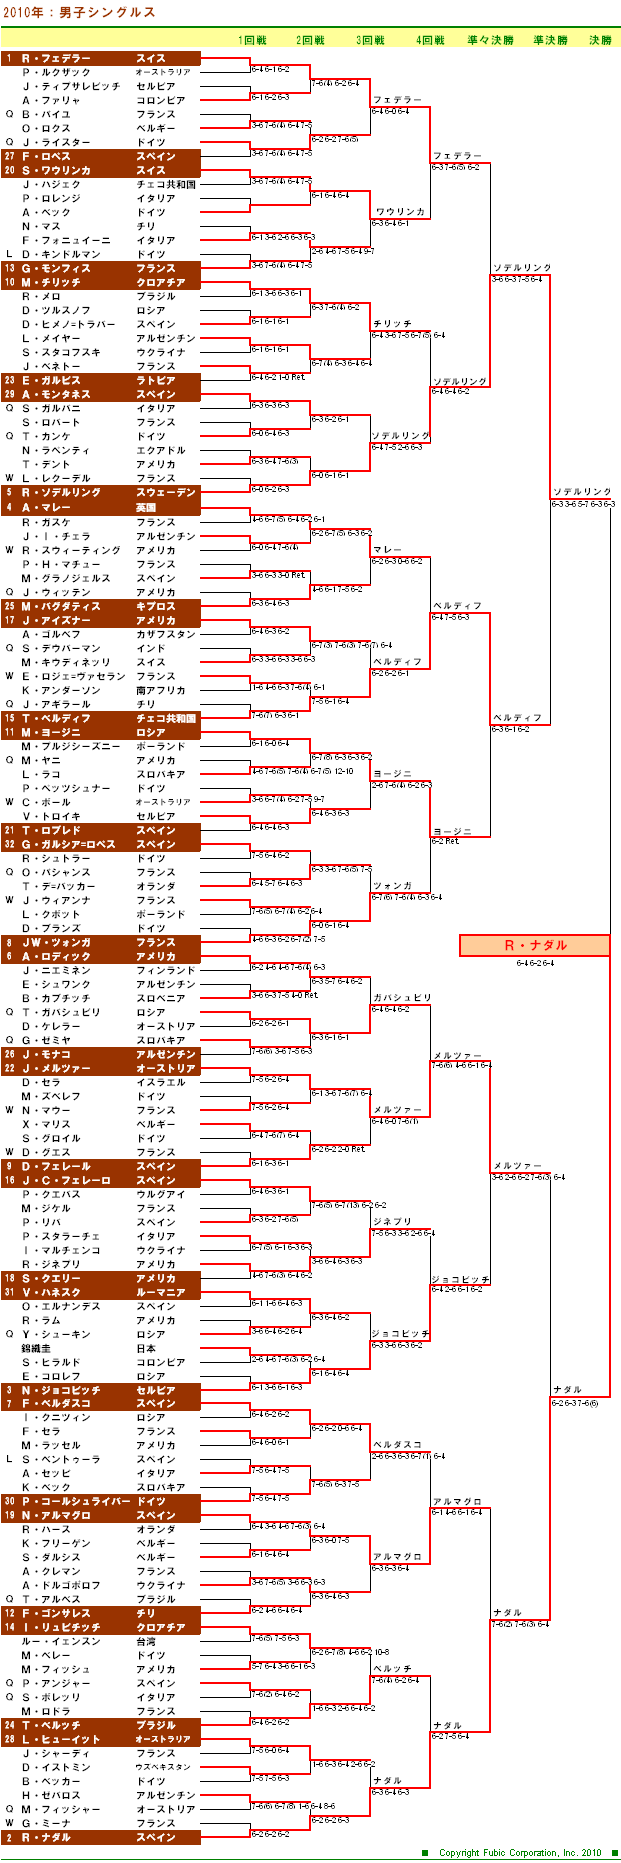 全仏オープンテニス2010　男子シングルスドロー表